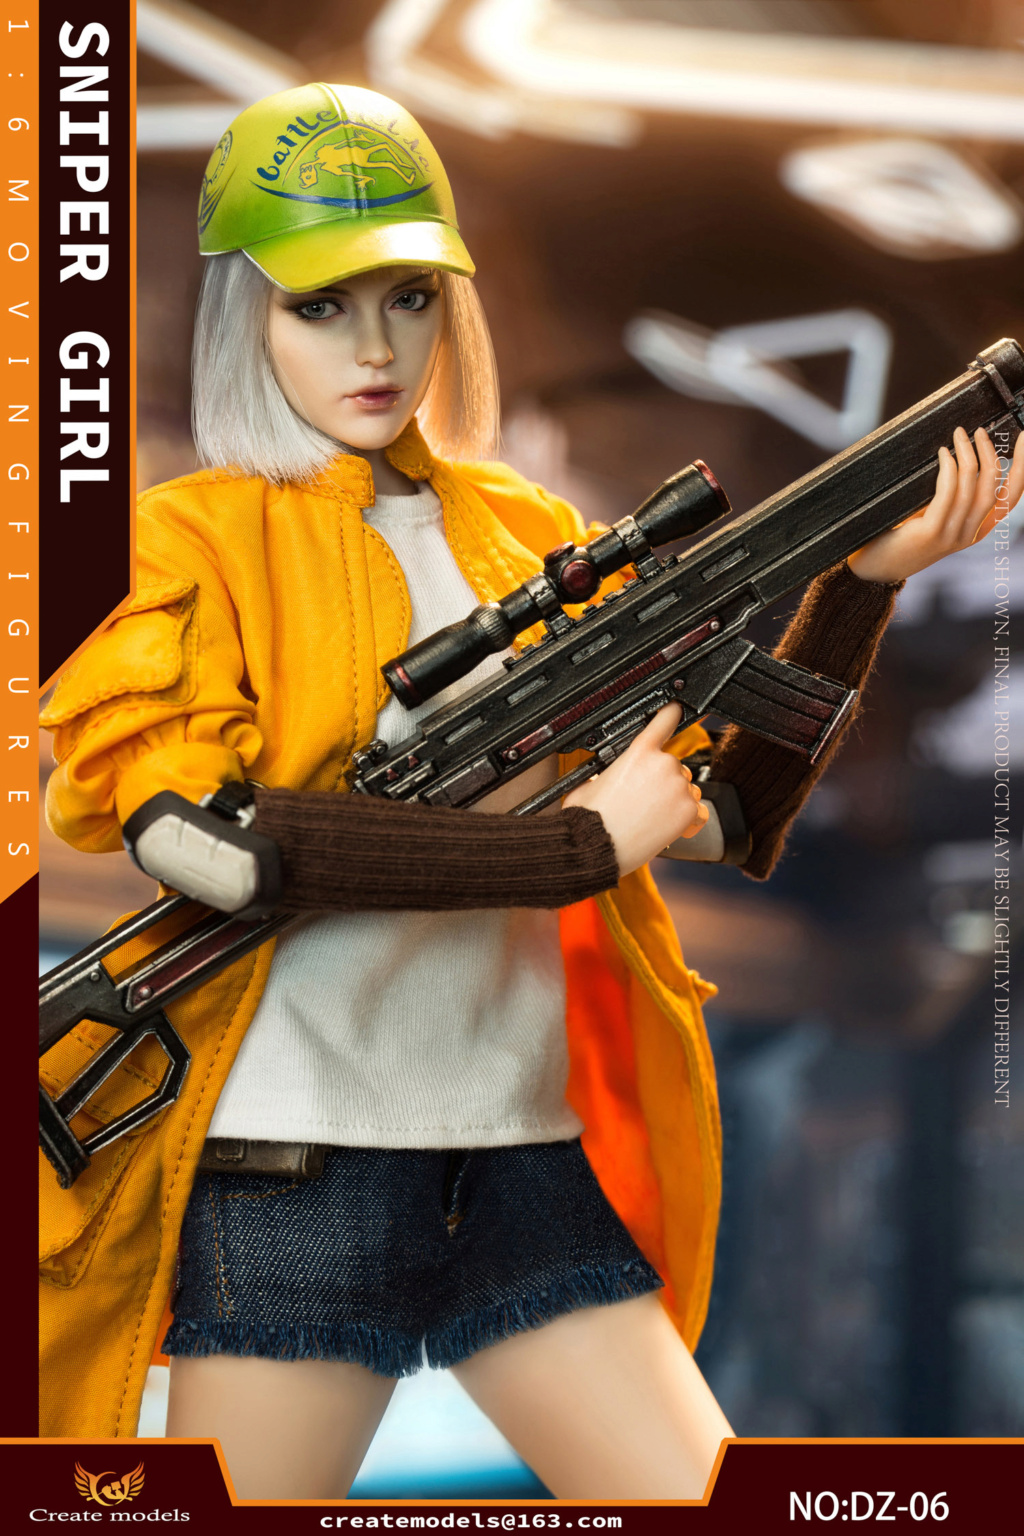 Createmodels - NEW PRODUCT: Createmodels: 1/6 Sniper Girl-Songbird/Lan Action Figures #DZ-05/DZ-06 18535310